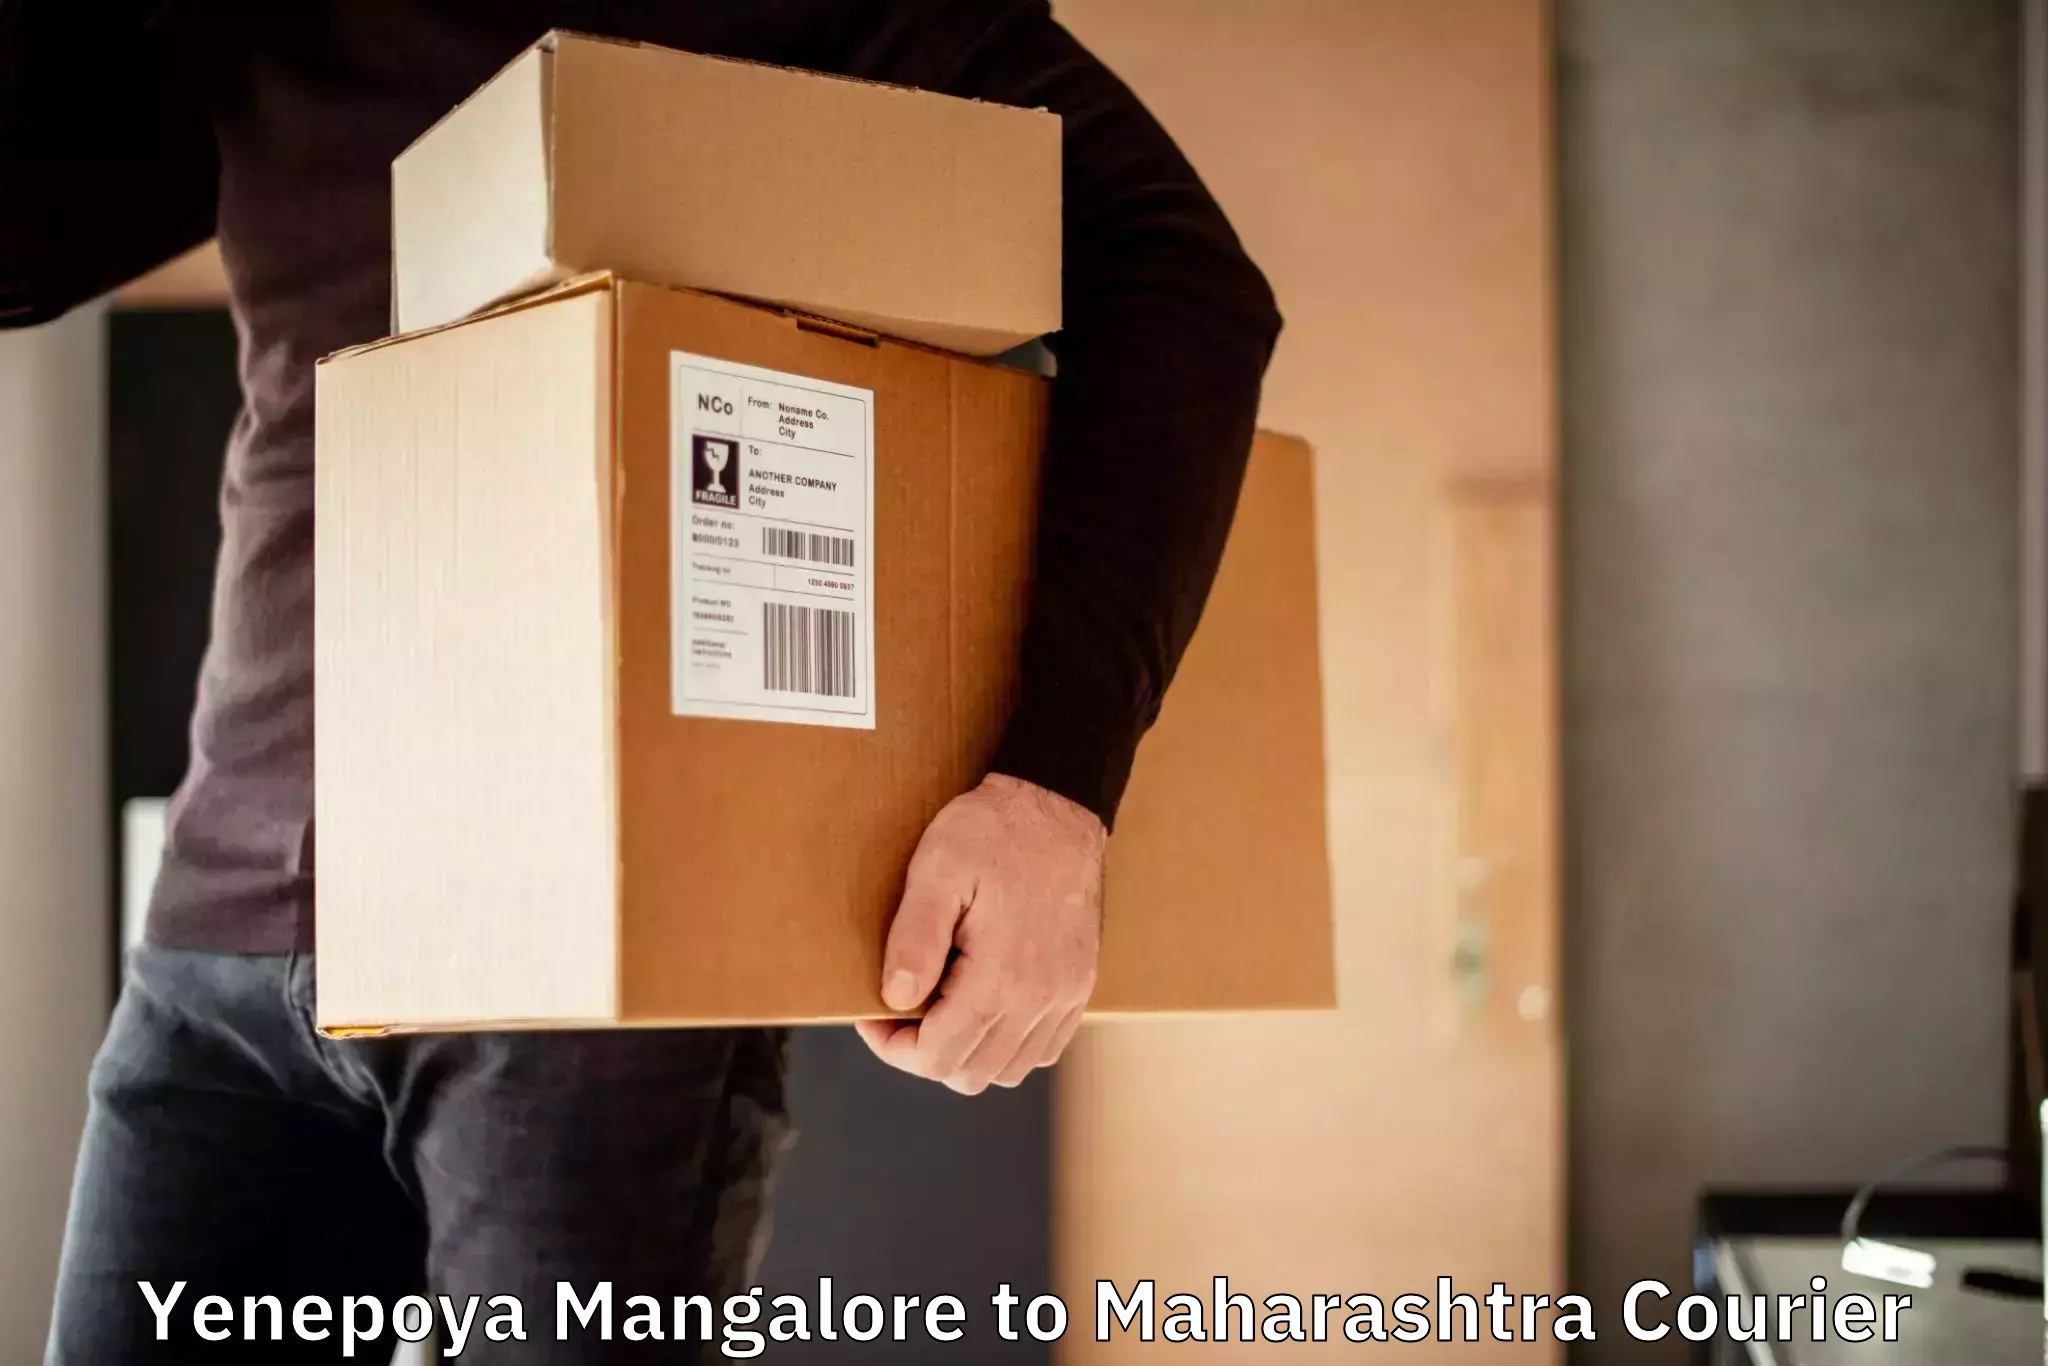 Pharmaceutical courier Yenepoya Mangalore to Shindkheda